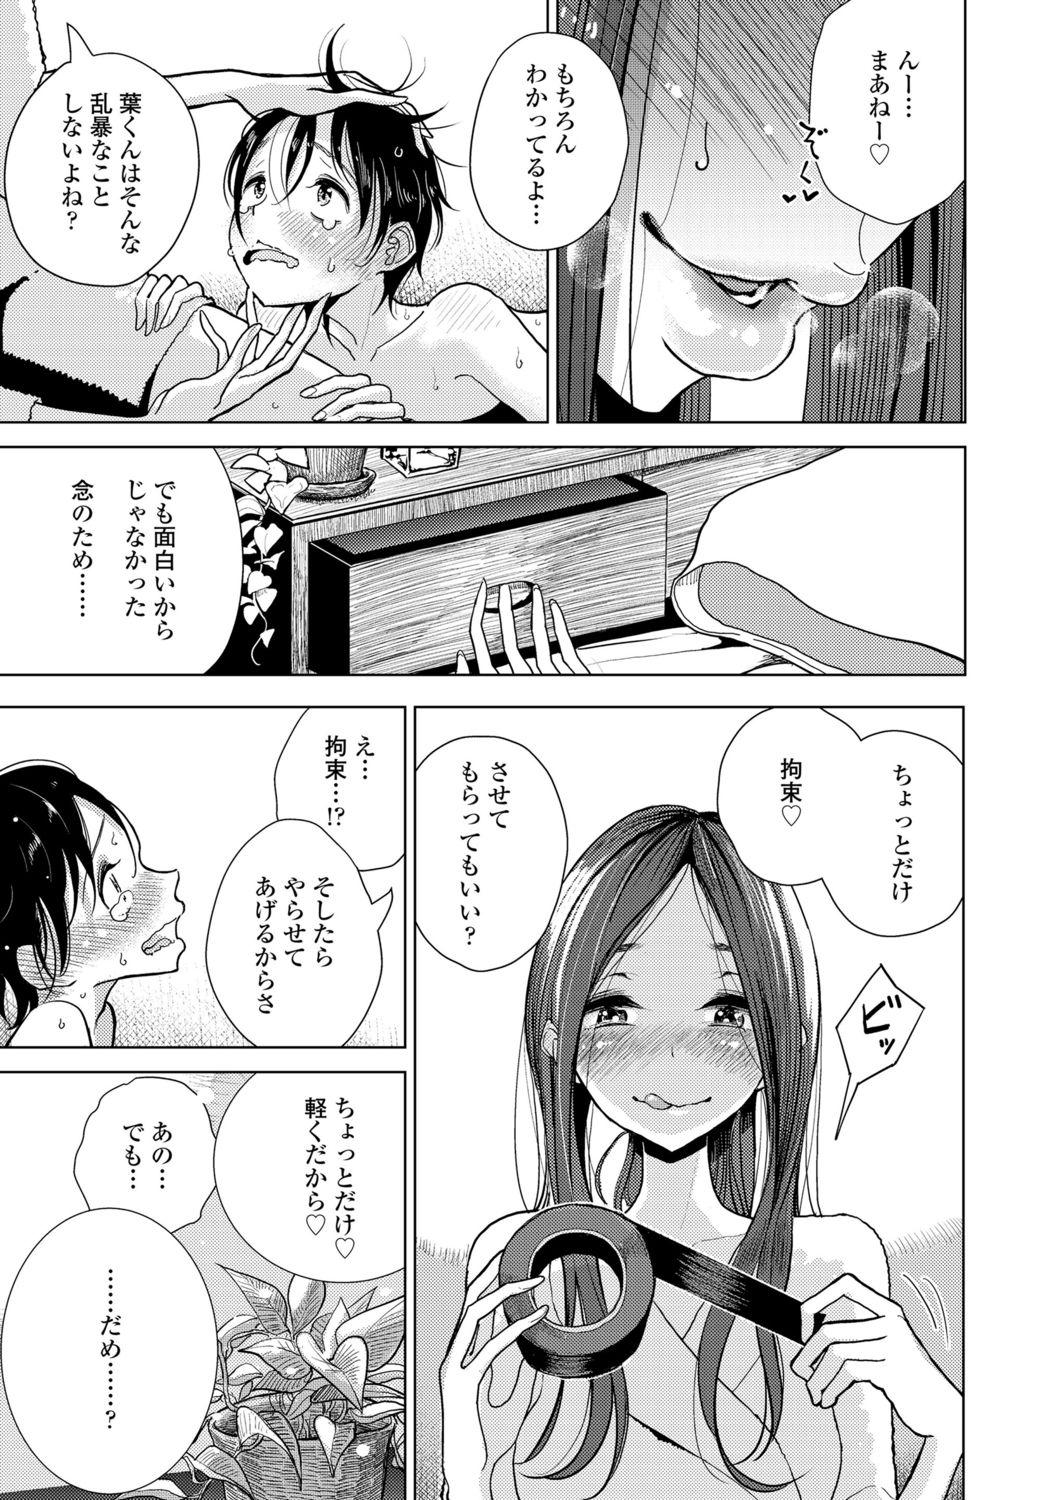 Bang Anata ga Toroke Ochiru made Tetona - Page 9